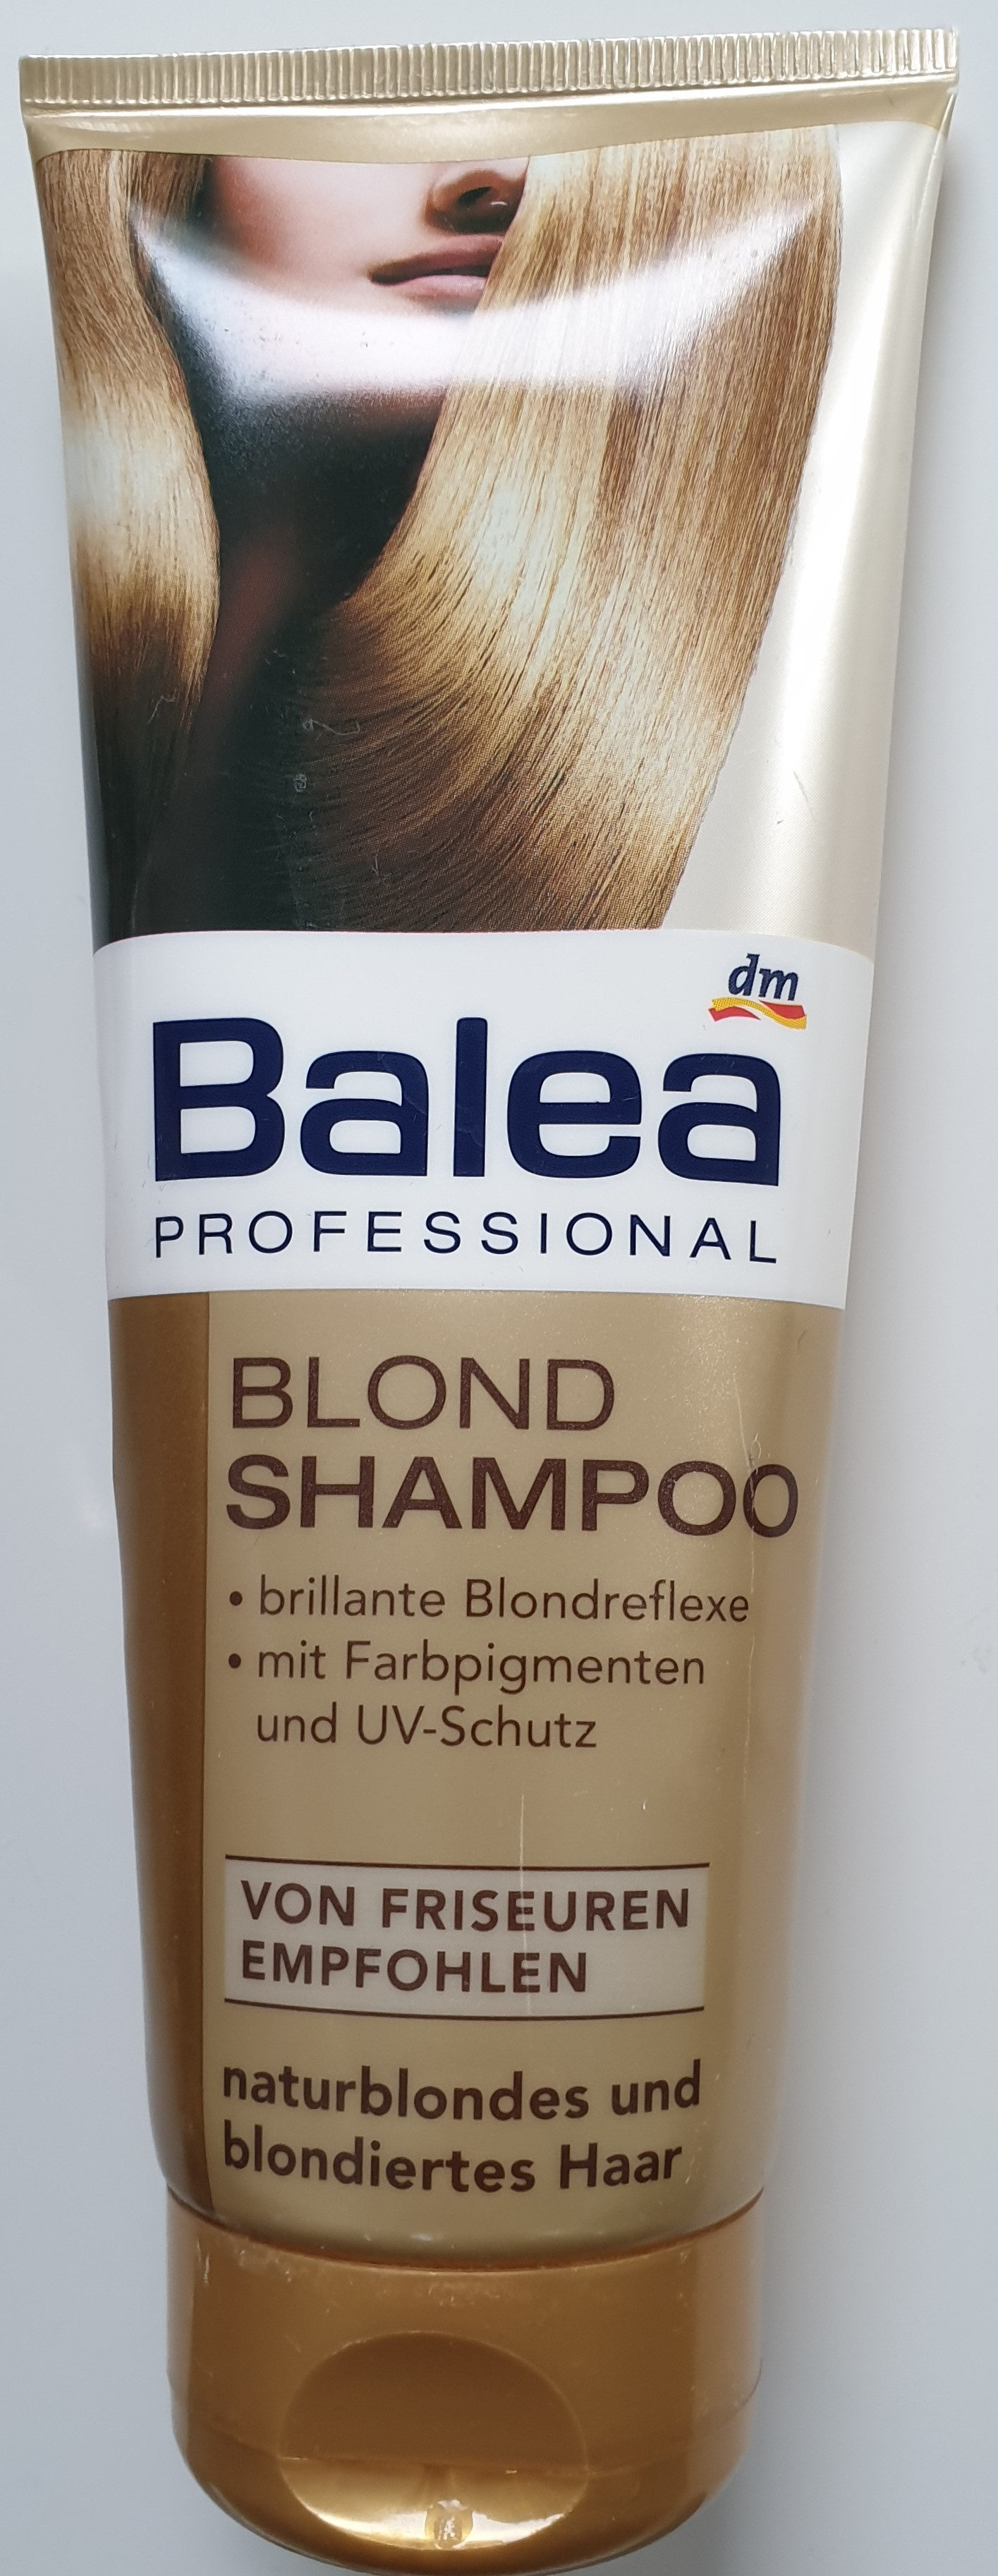 Blond Shampoo - Produit - de